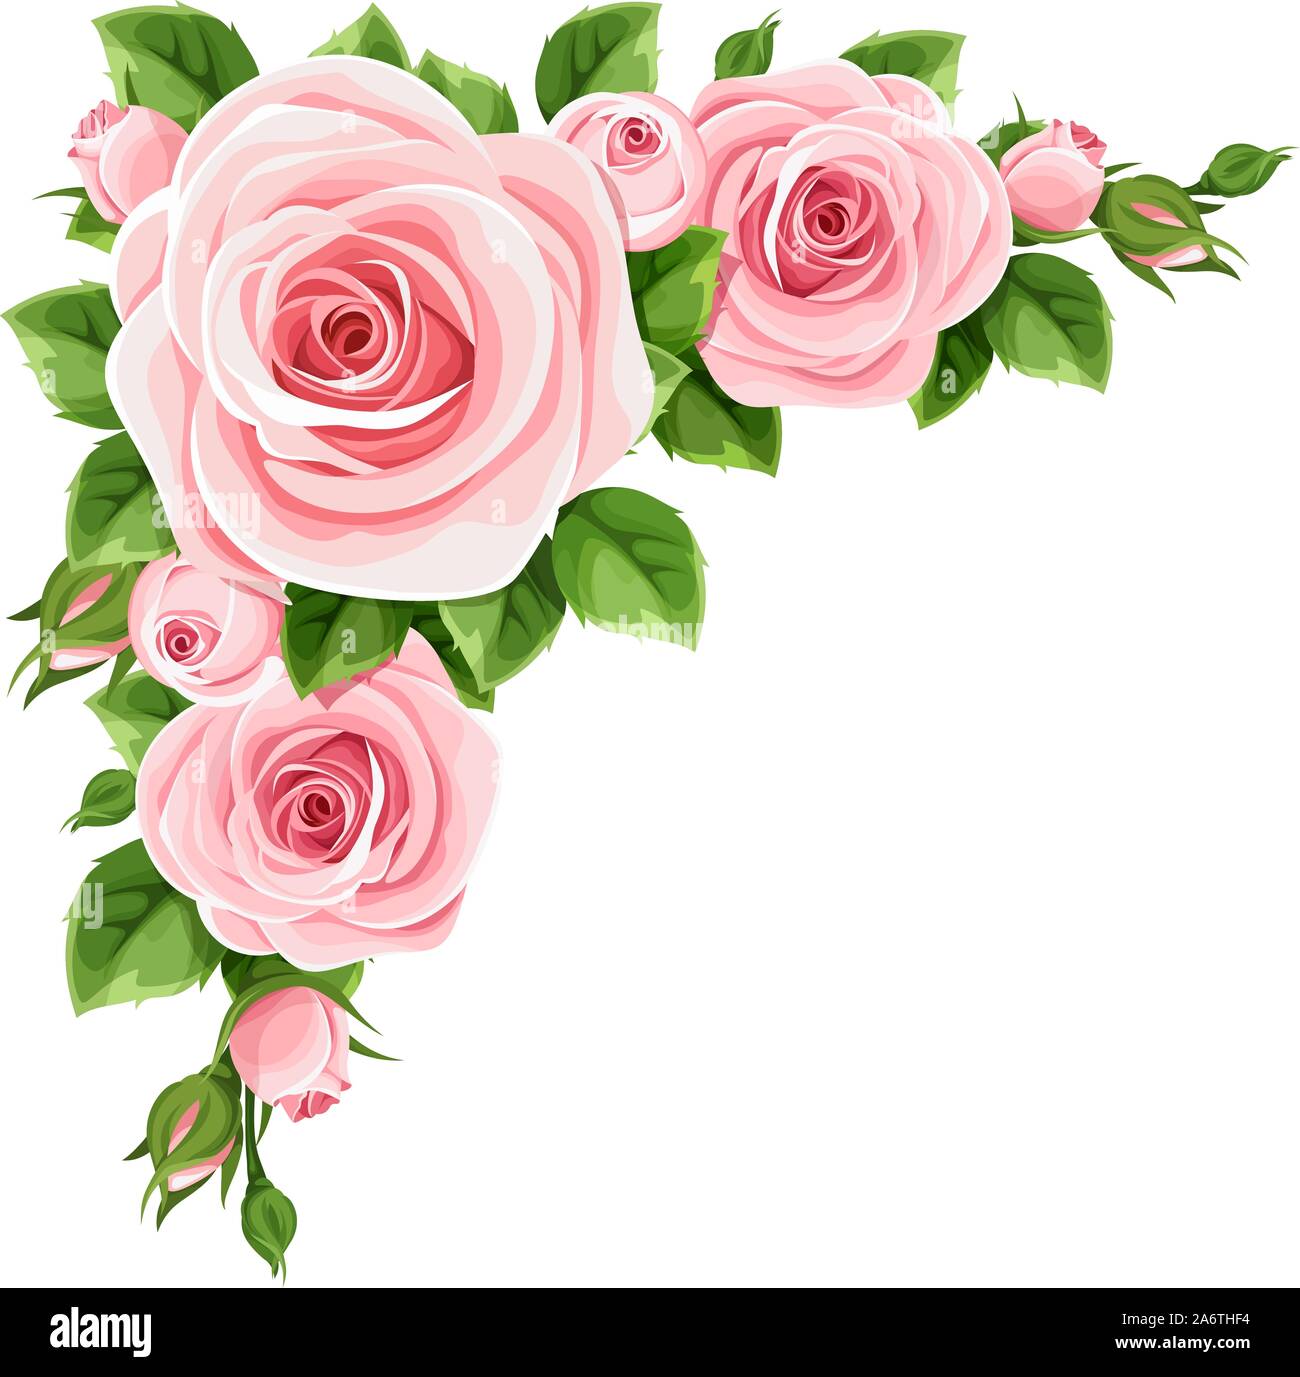 Vektor-Ecke-Hintergrund mit rosa Rosen und grünen Blättern. Stock Vektor